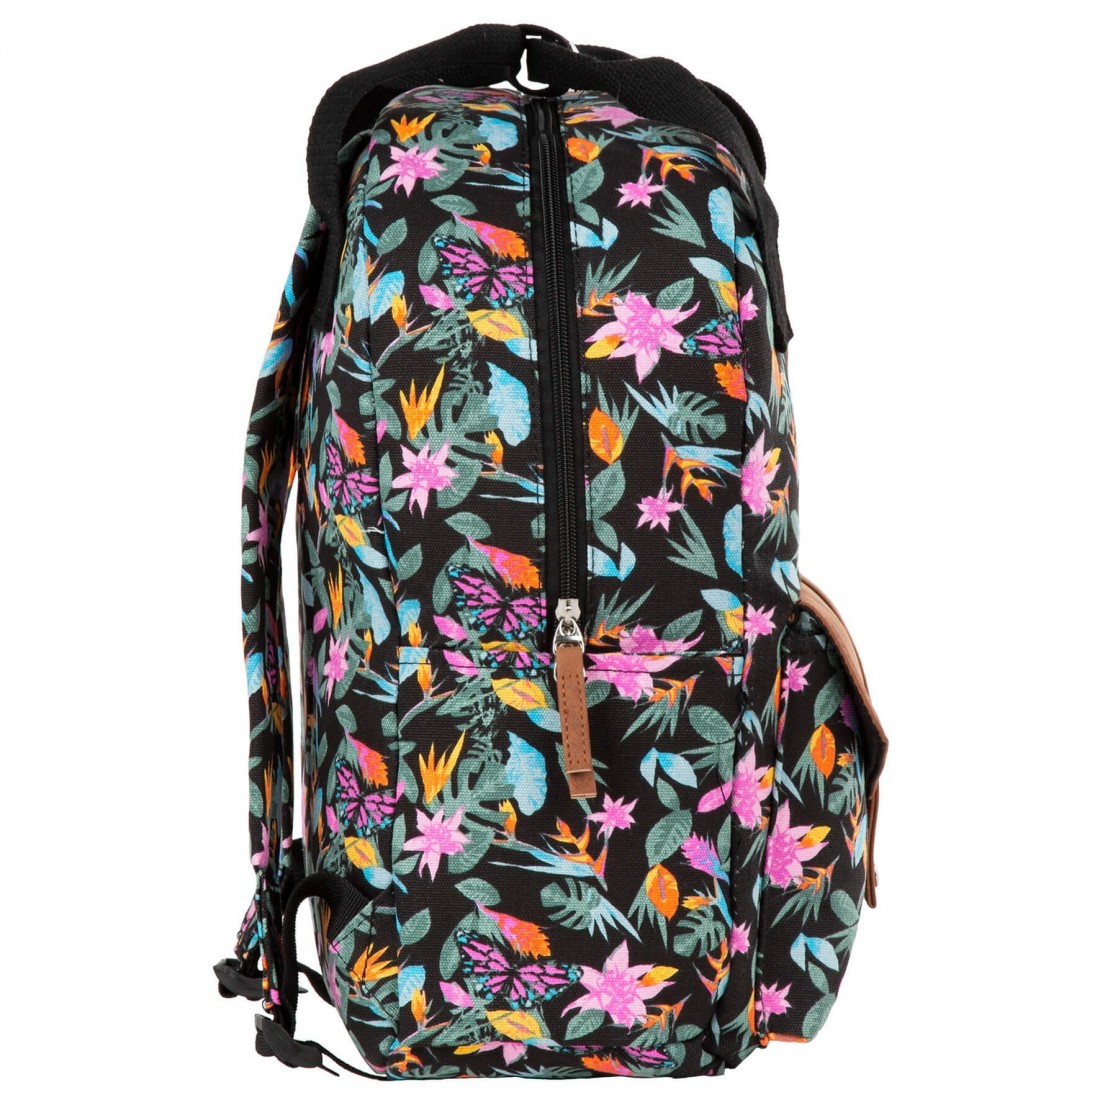 Plecak vintage dla dziewczyny BackUP czarny w tropikalne kwiaty CA36 - plecak-tornister.pl